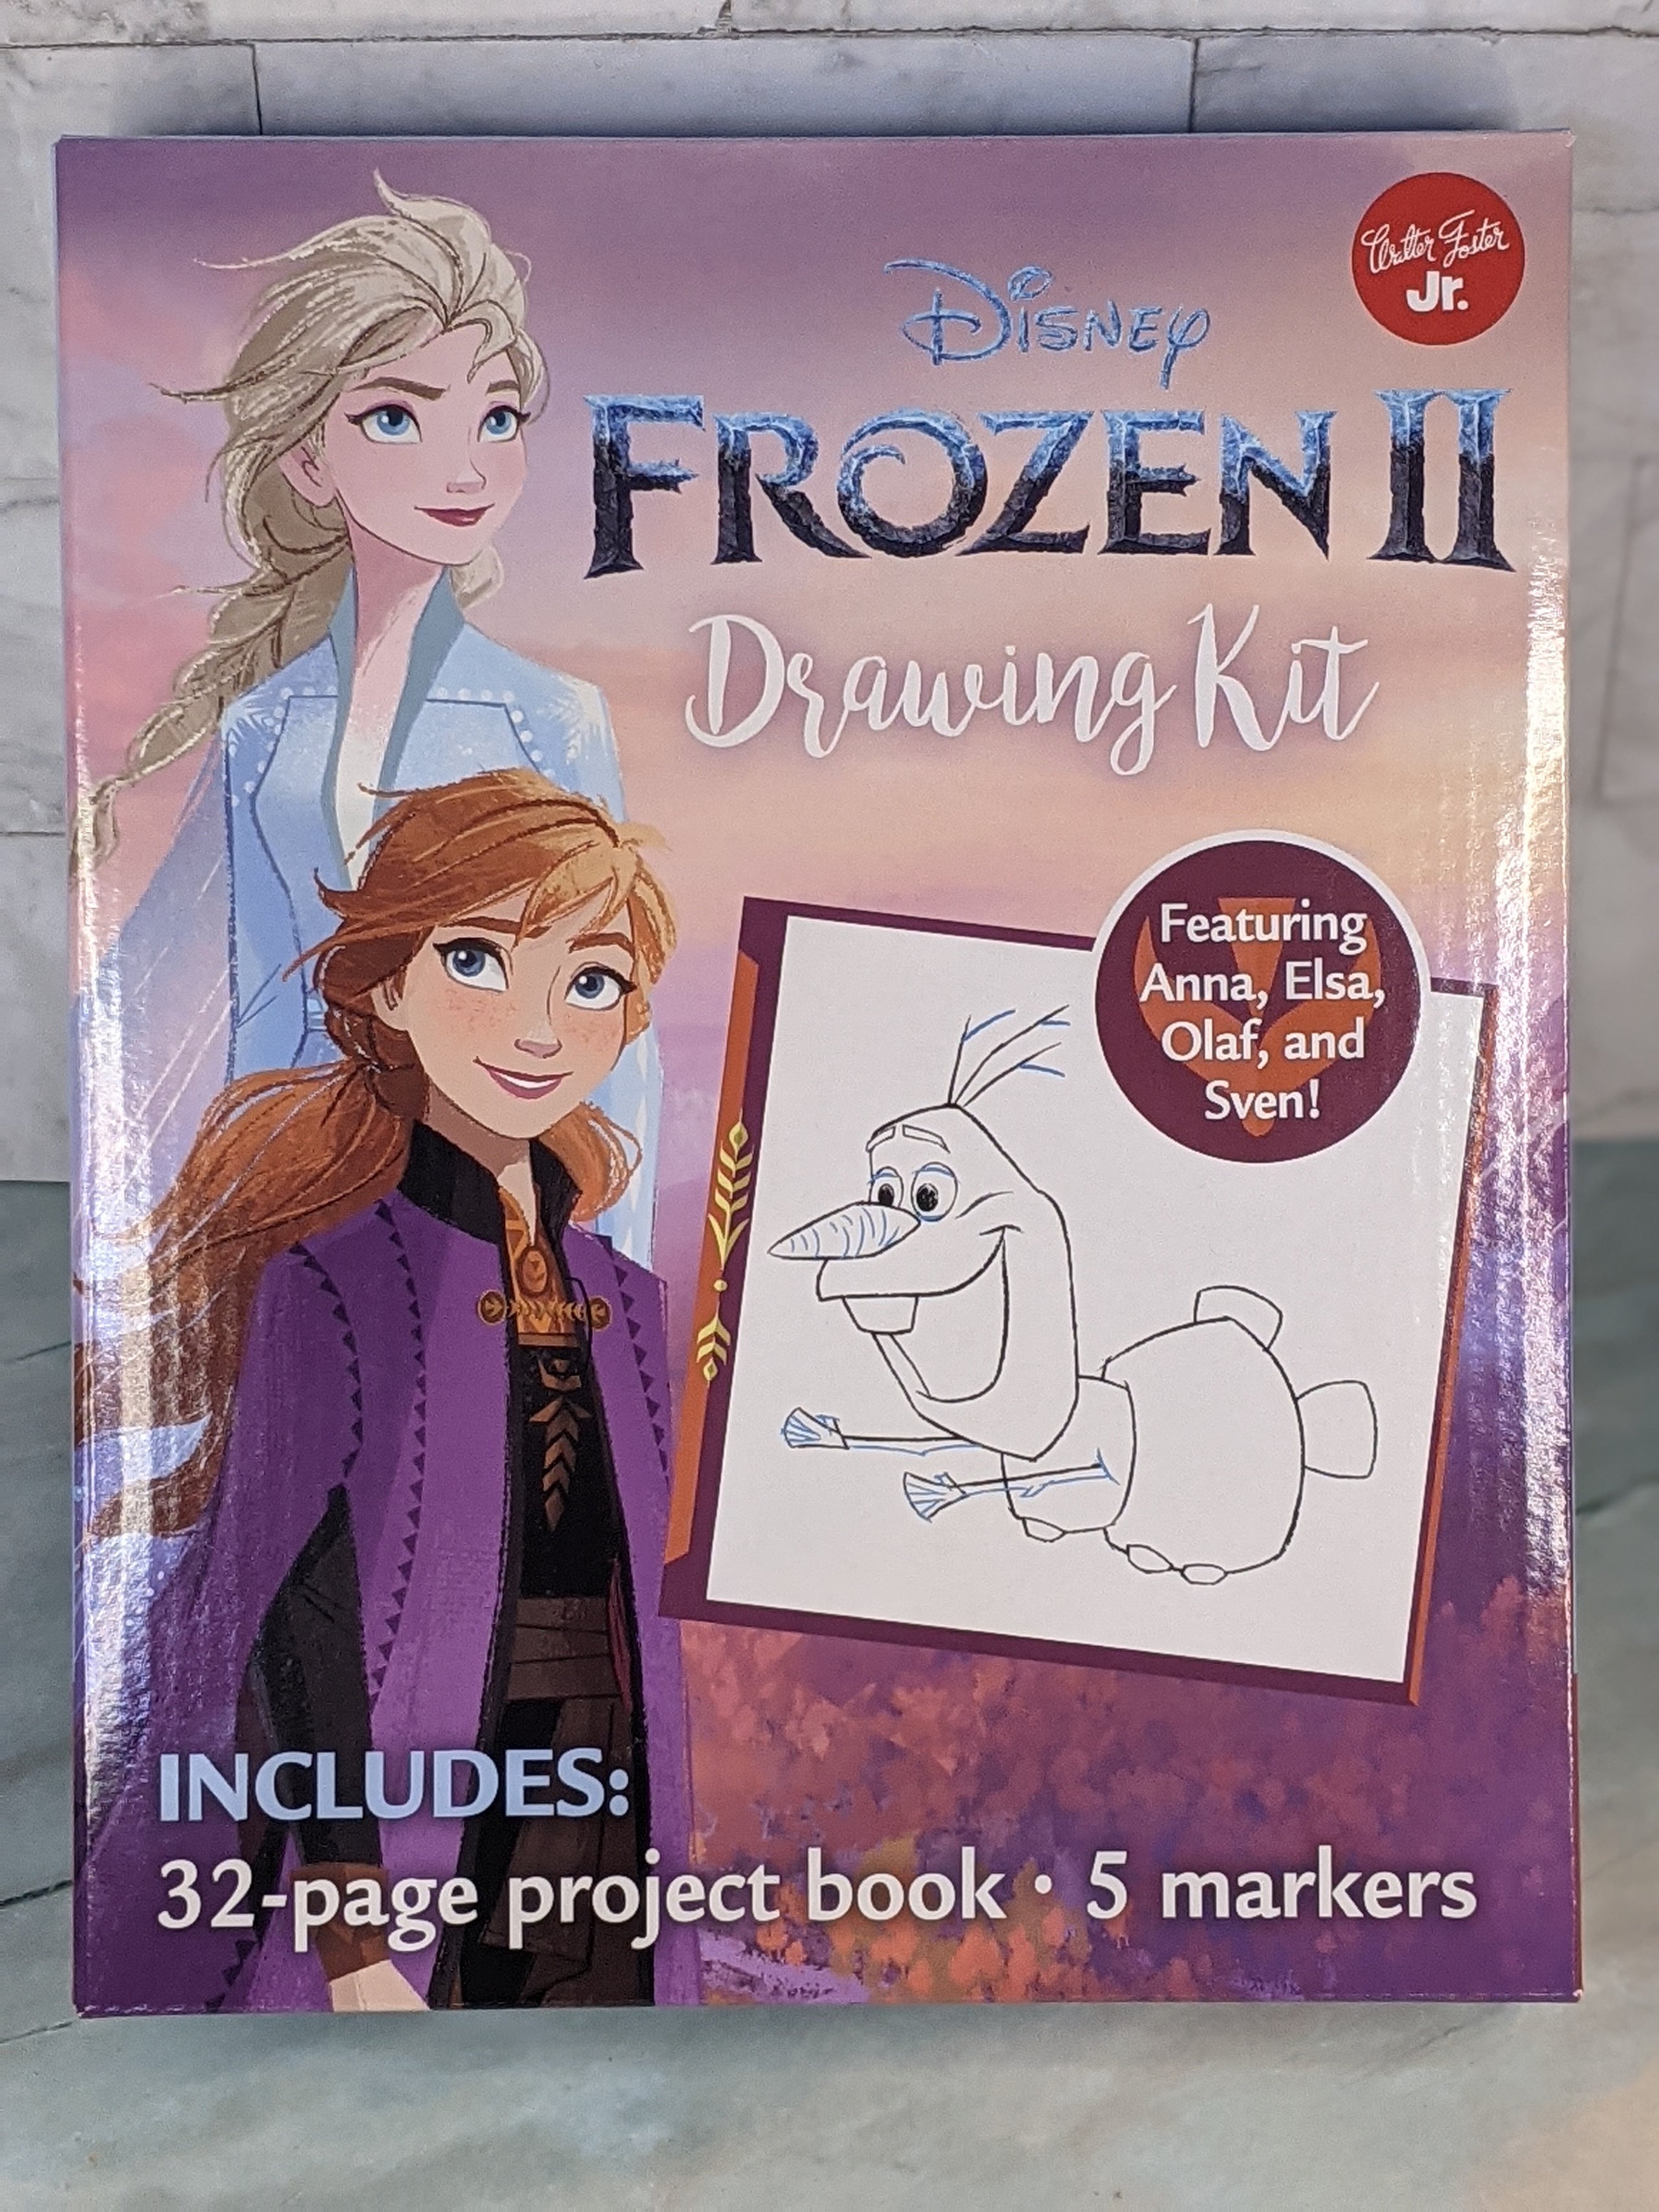 Disney Frozen II Drawing Kit